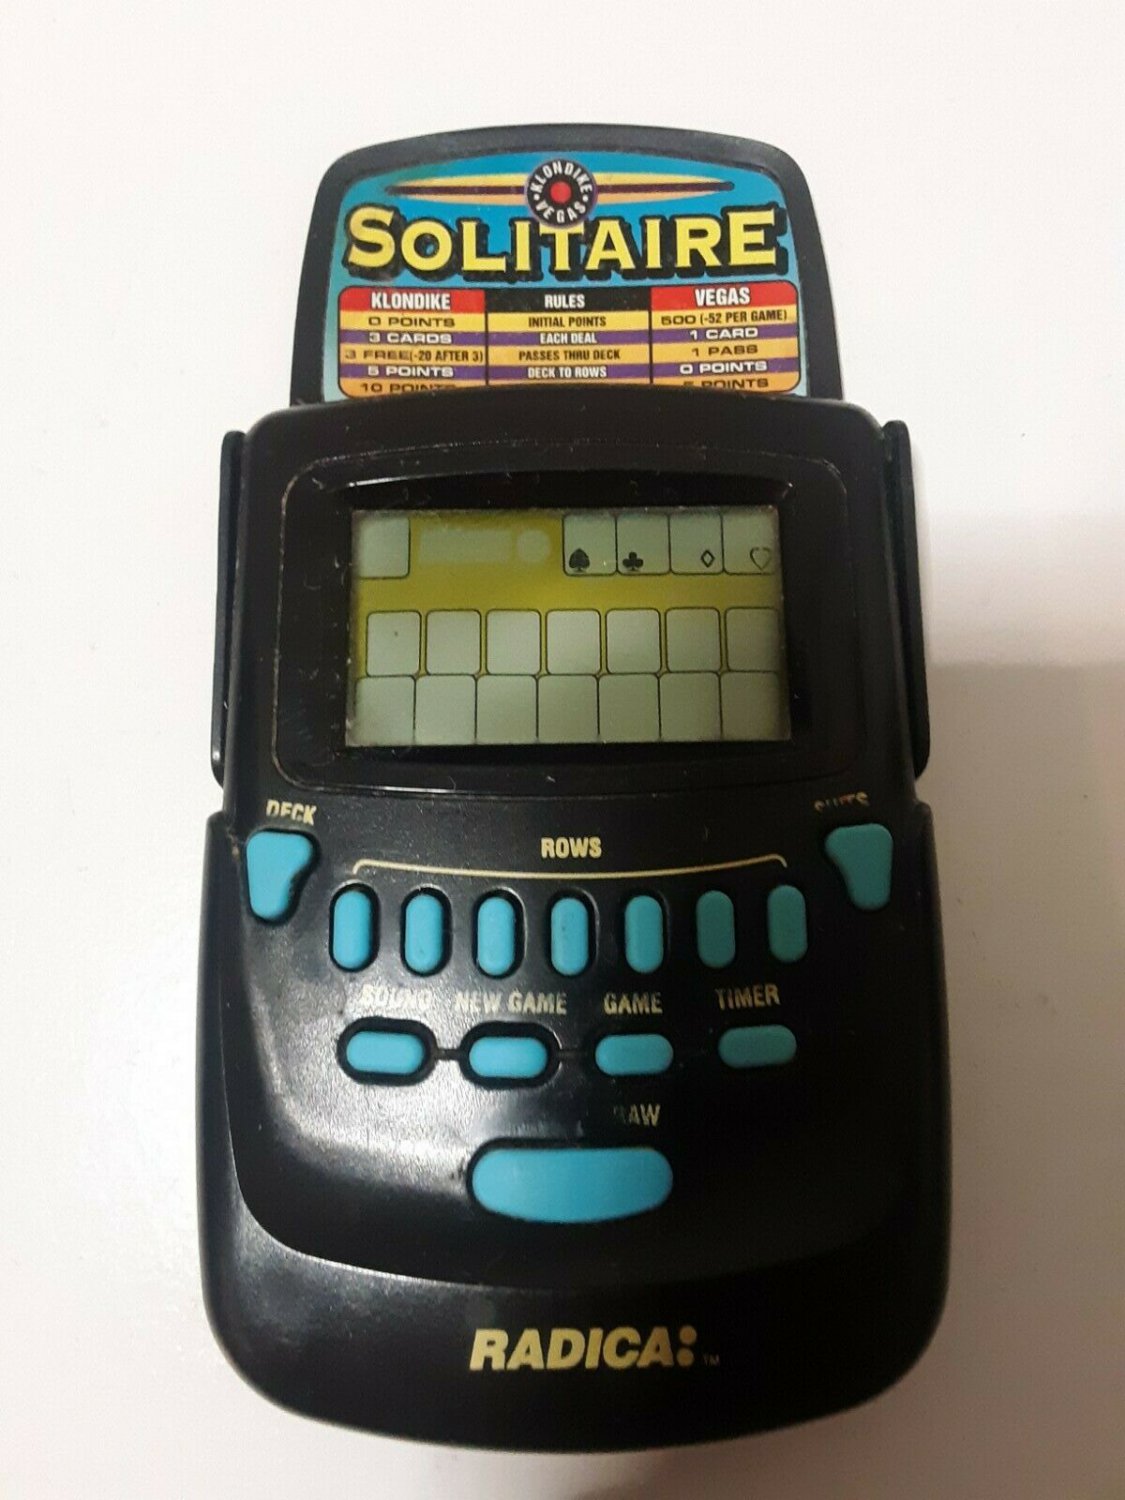 radica handheld klondike solitaire game